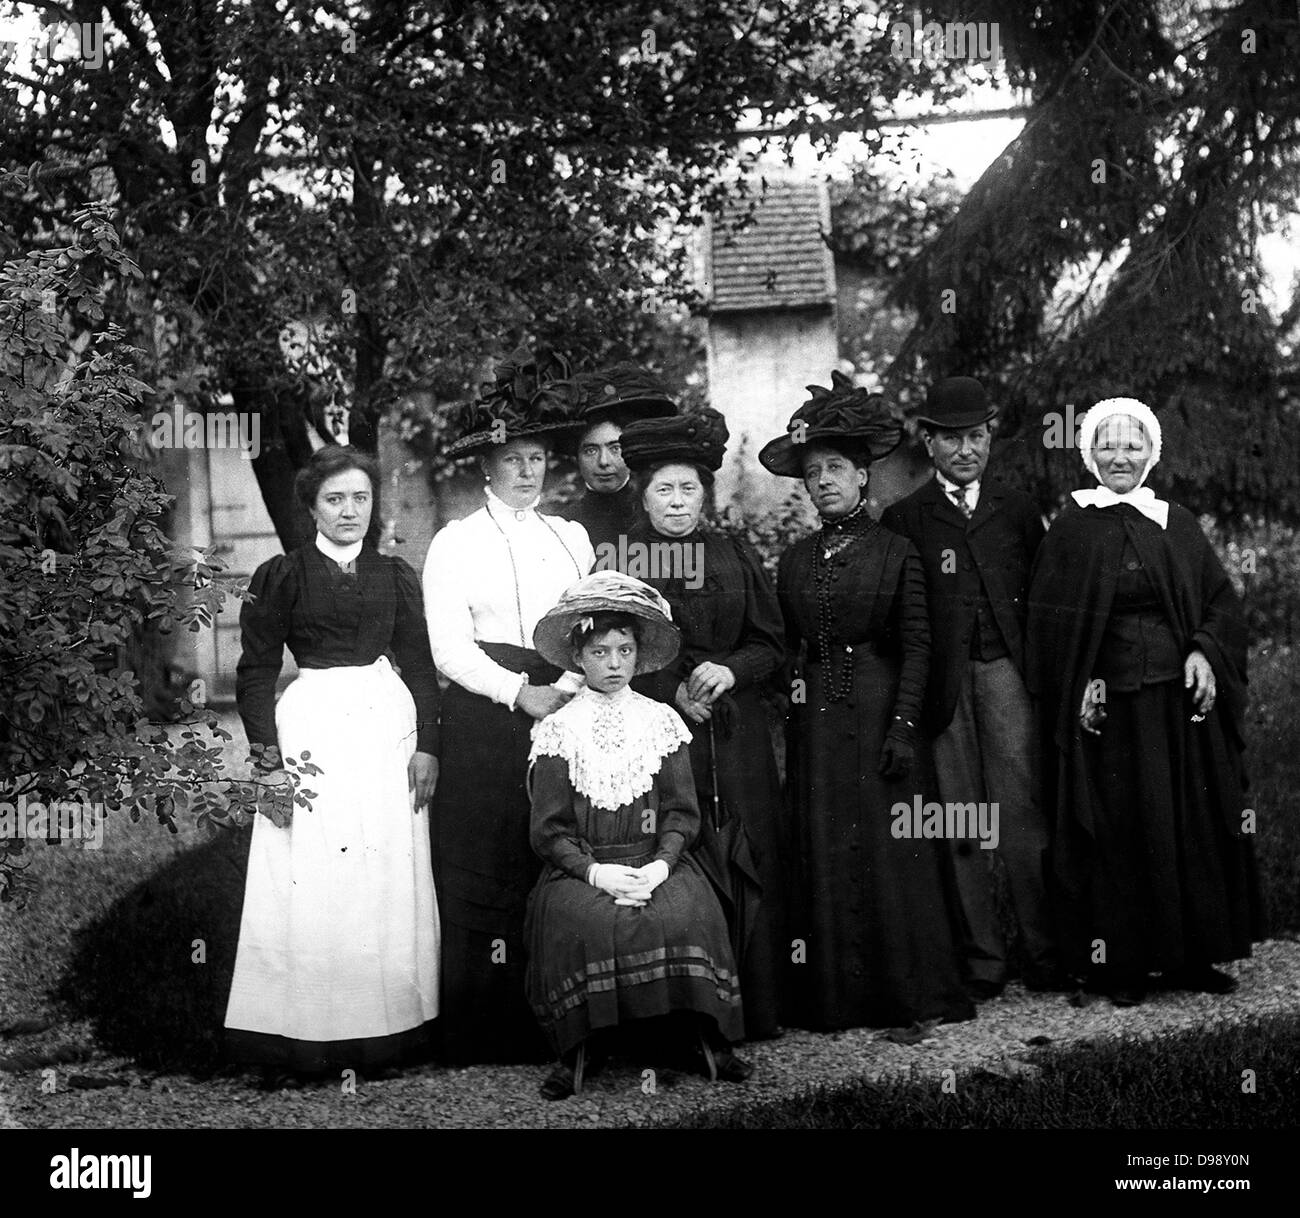 Los aldeanos francesa fotografiado circa 1911 Foto de stock